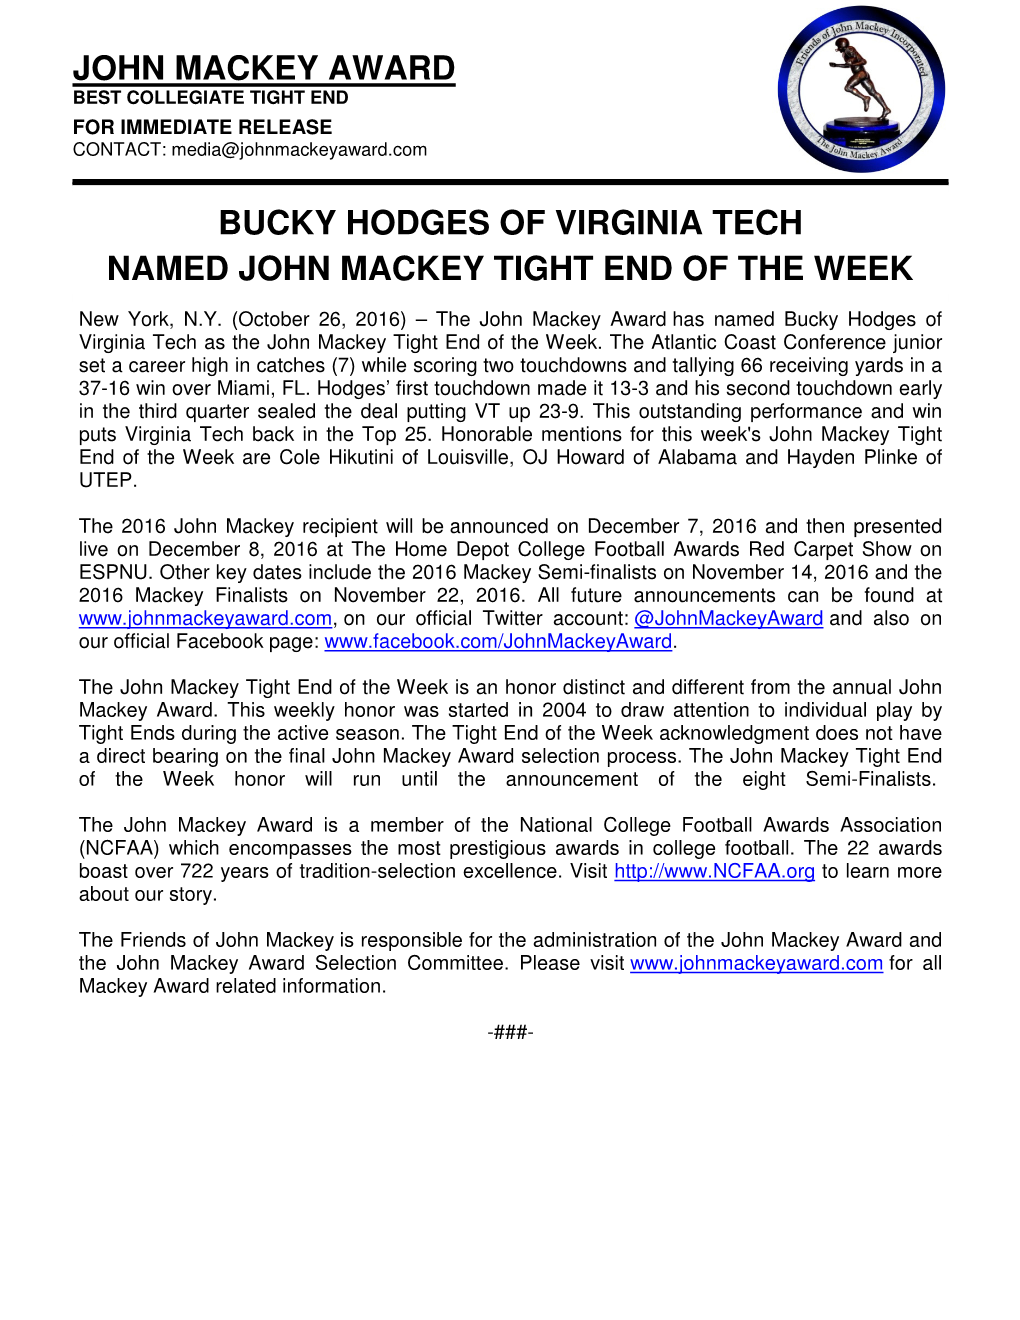 John Mackey Award Bucky Hodges of Virginia Tech